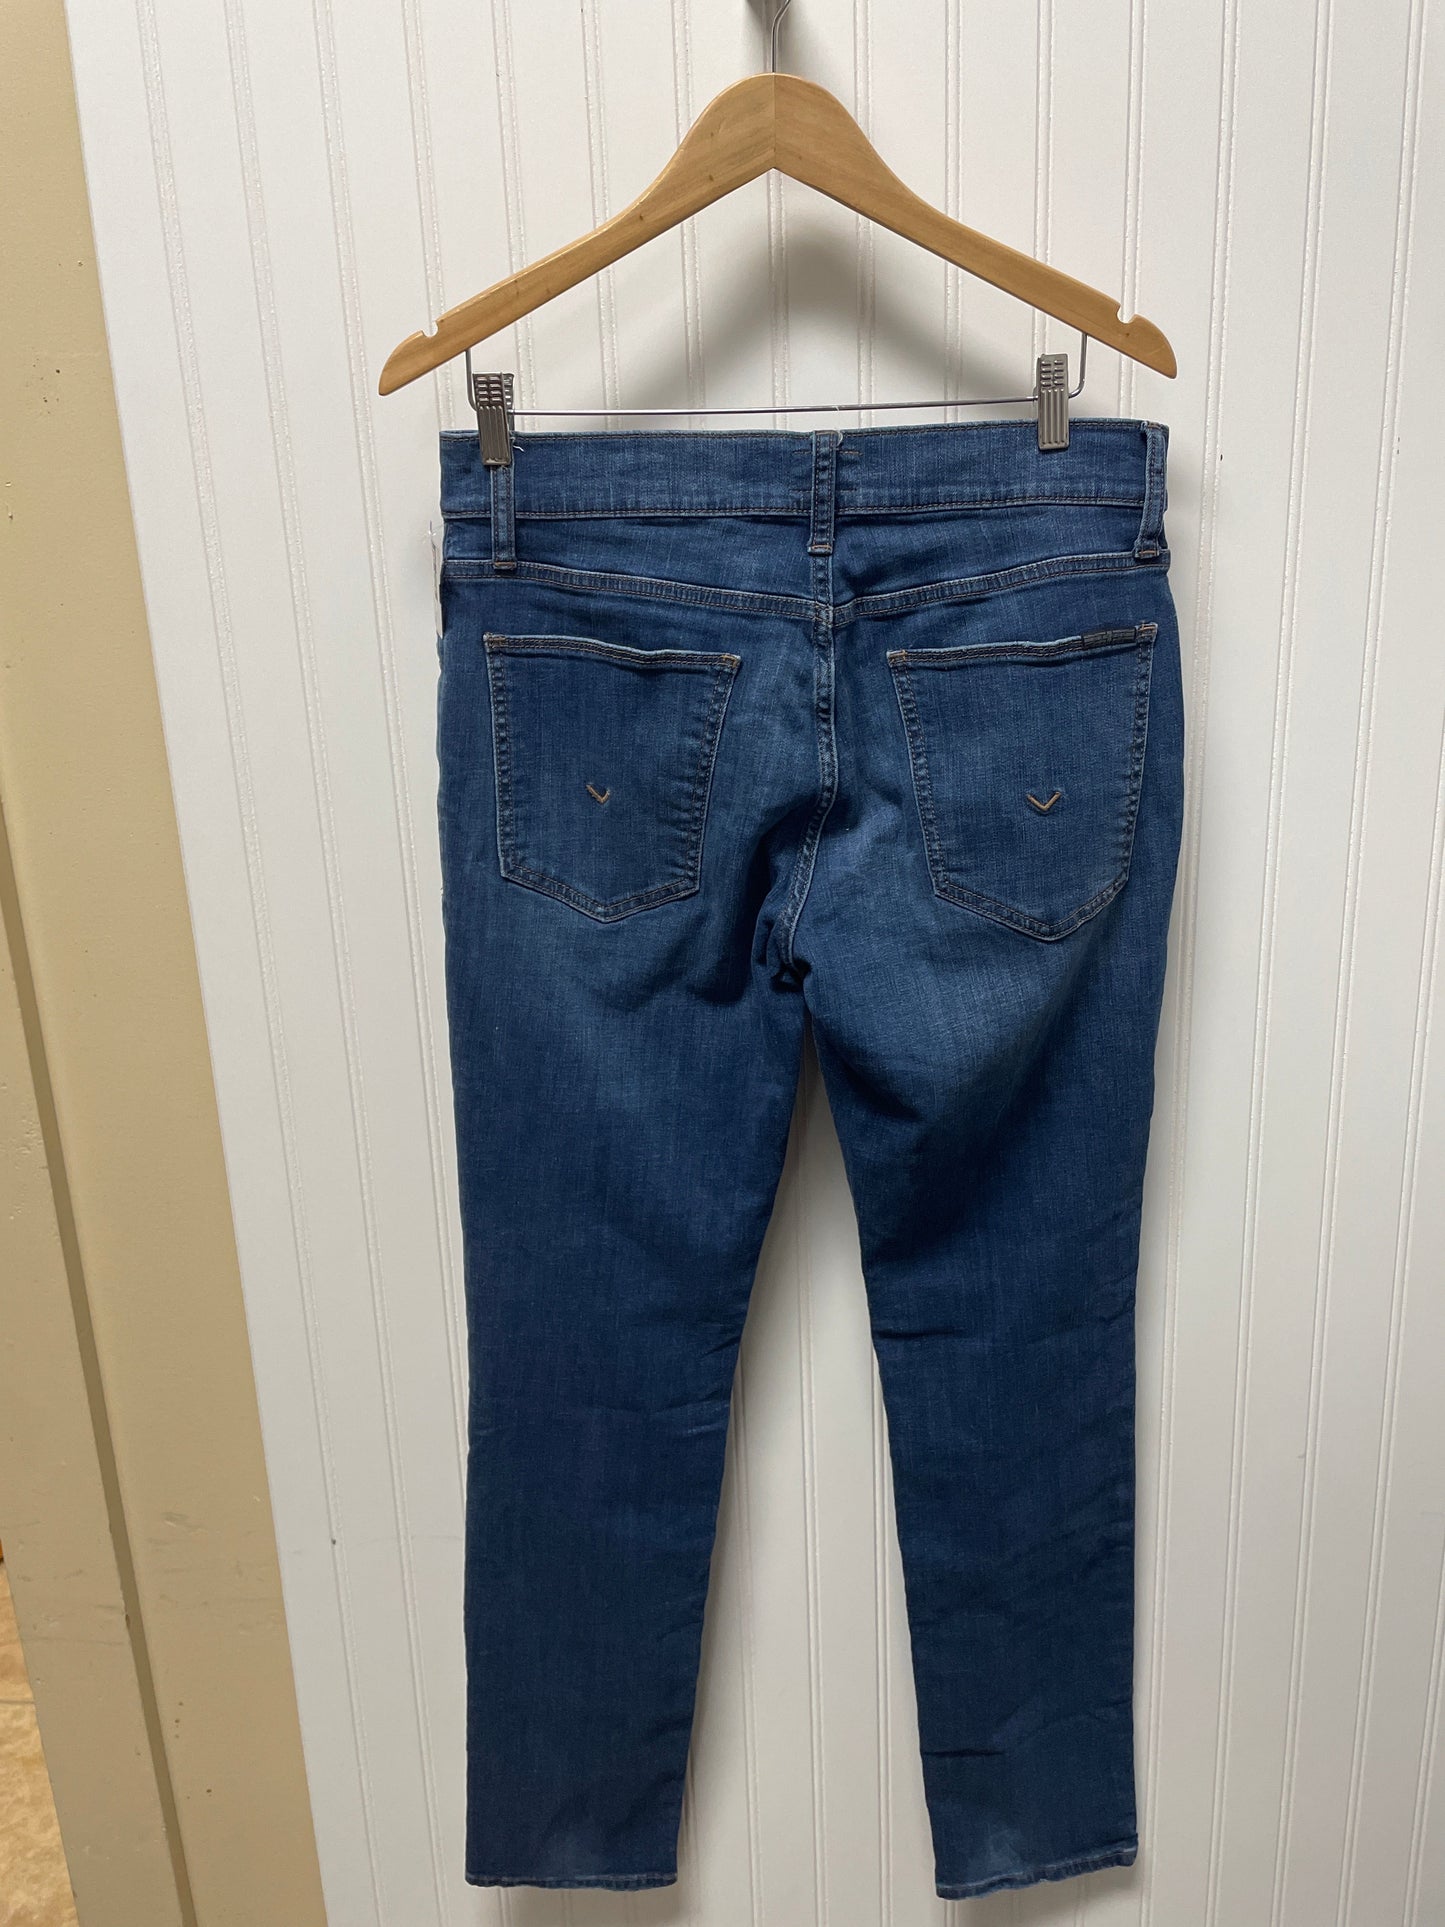 Blue Denim Jeans Designer Hudson, Size 12